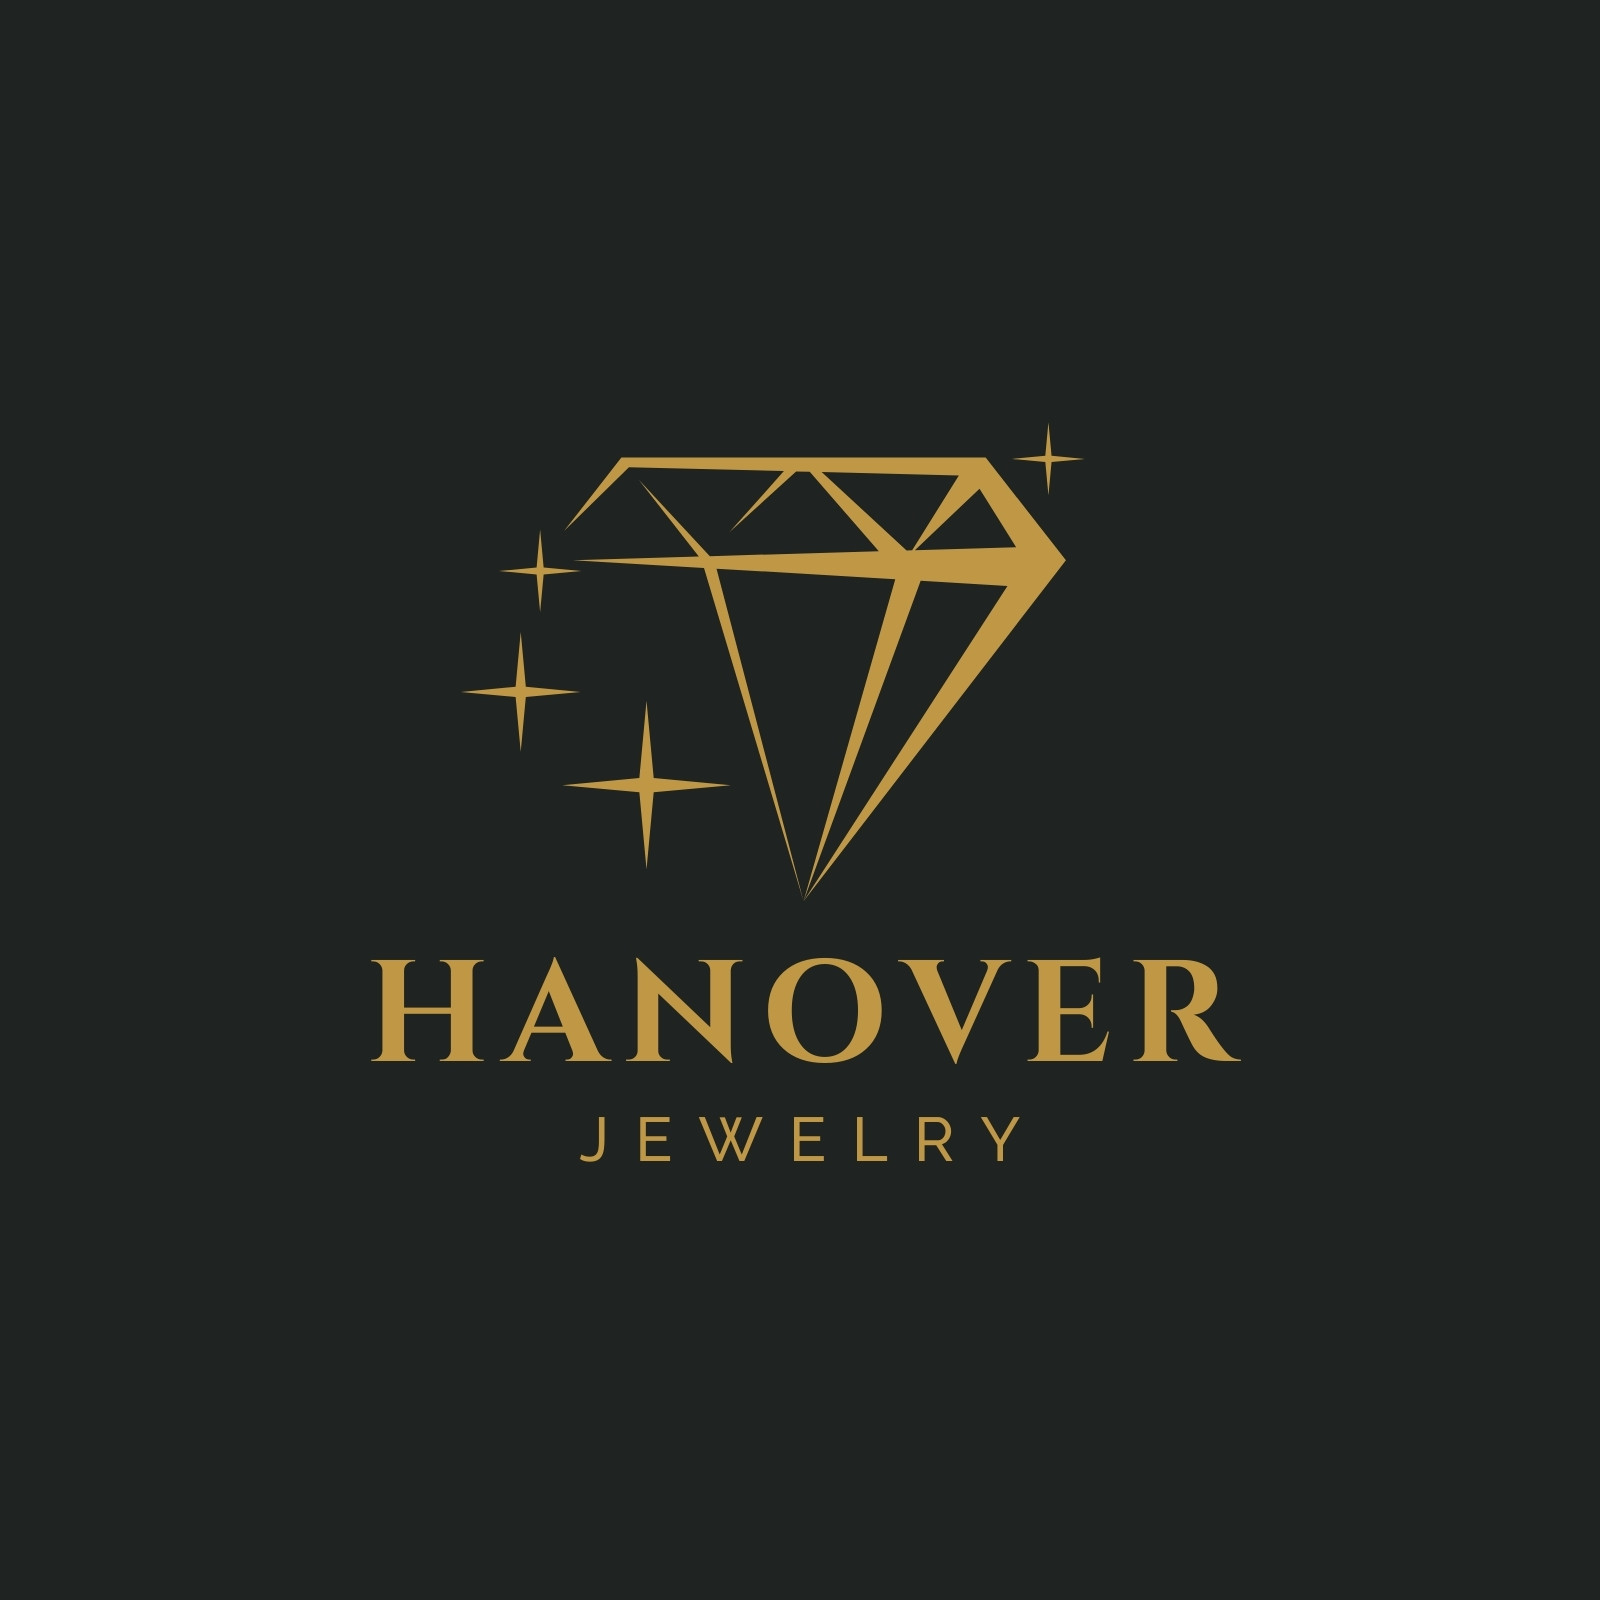 Premium Vector | Luxury gold diamond logo